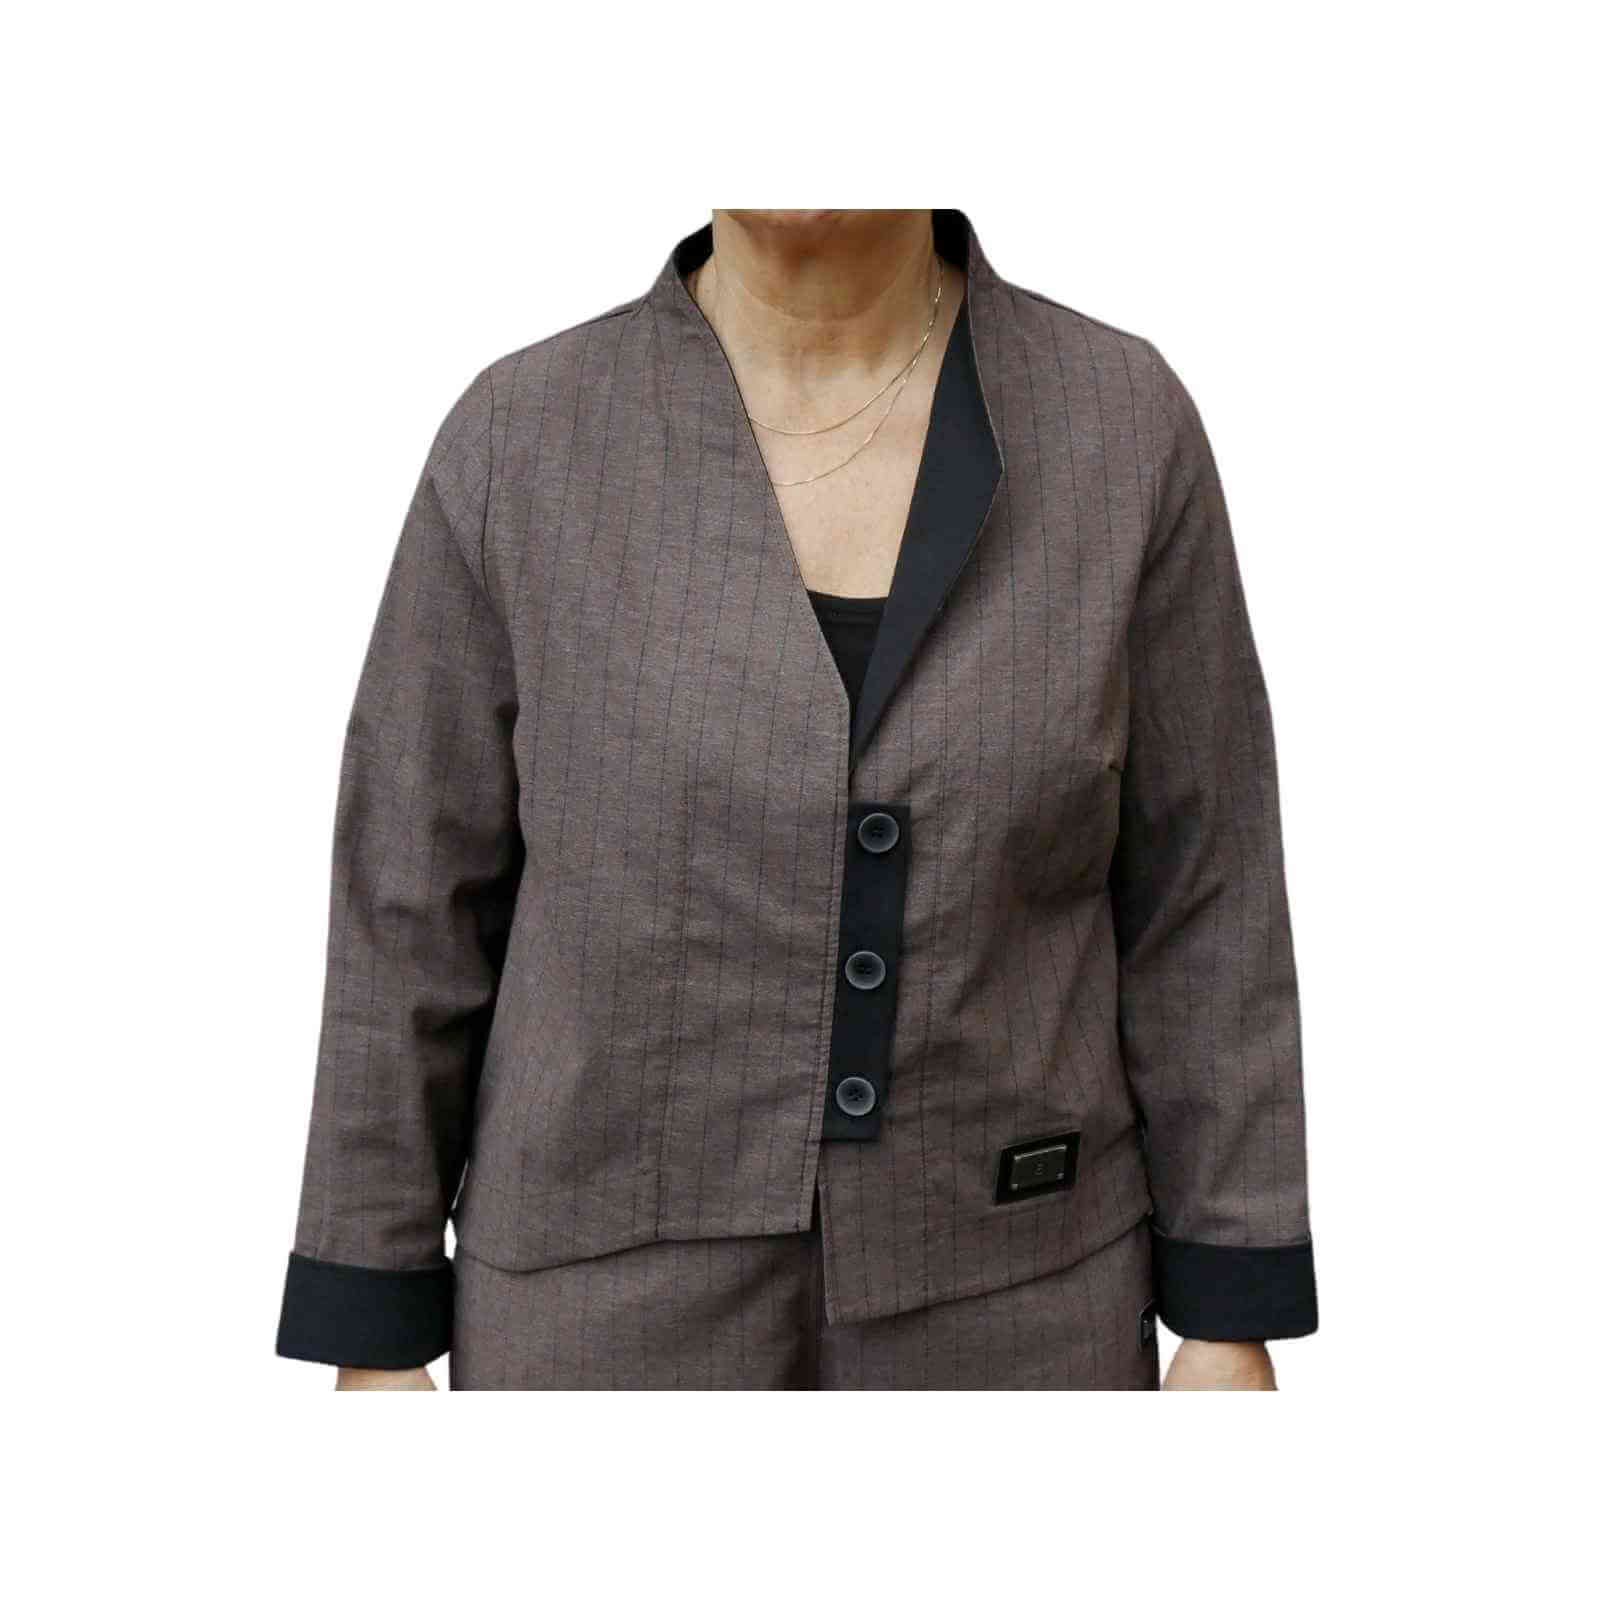 Brun habit jakke fra E-Avantgarde med 3 sorte knapper